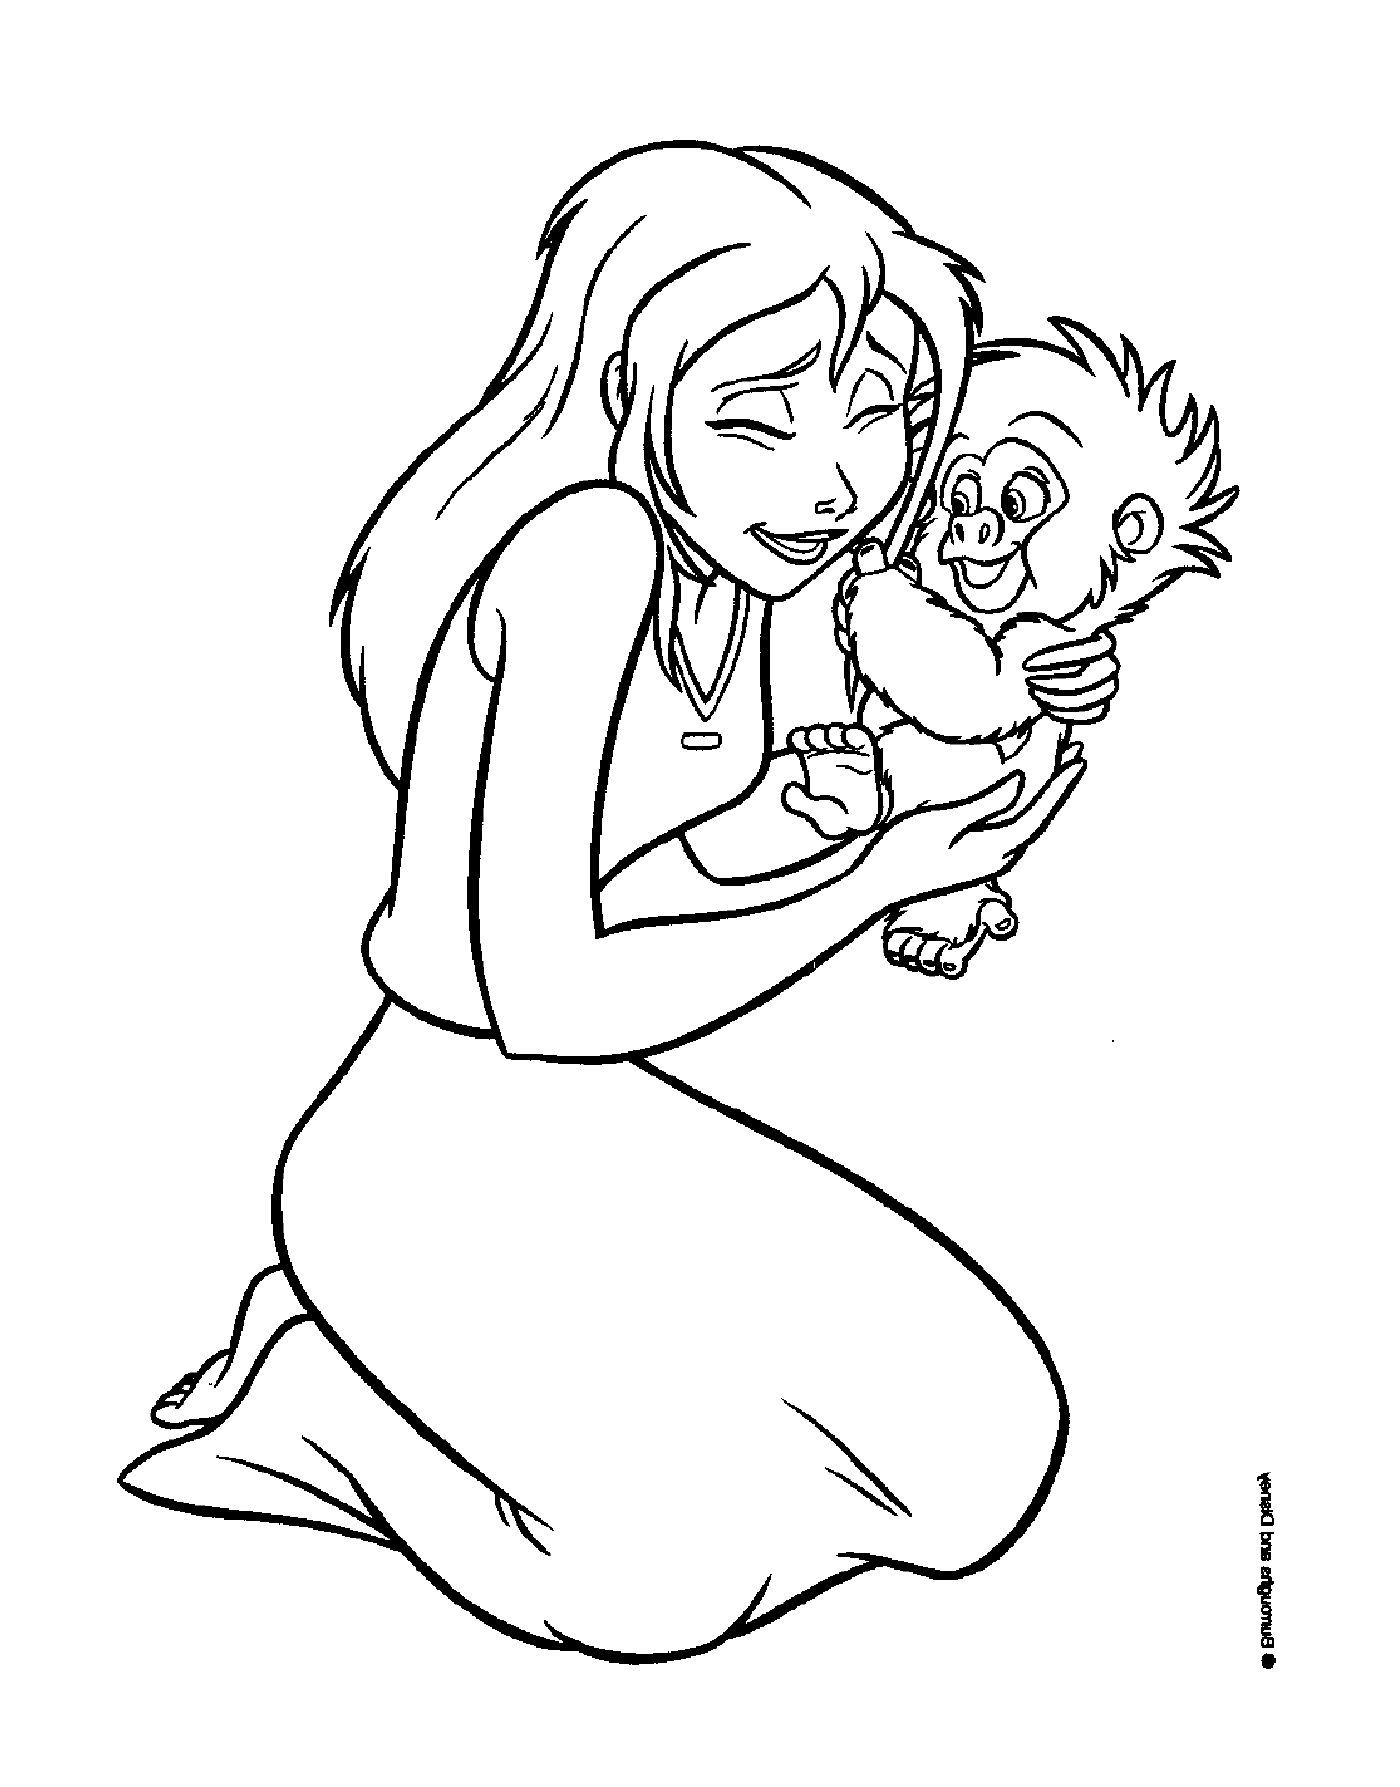  महिला अपनी बाहों में एक बच्चे बंदर पकड़े 